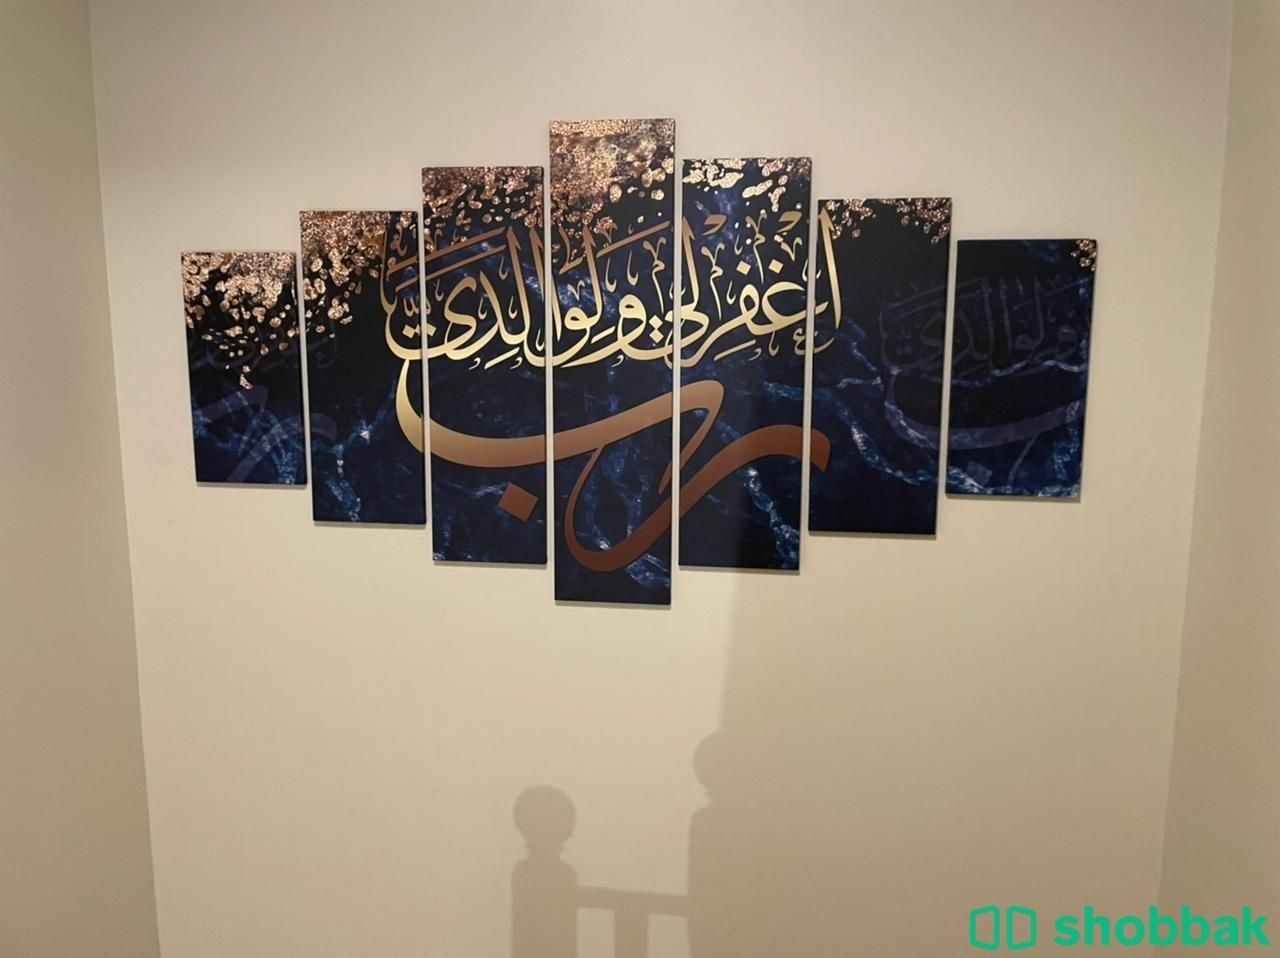 لوحات جدارية بأسعار تنافسية  Shobbak Saudi Arabia